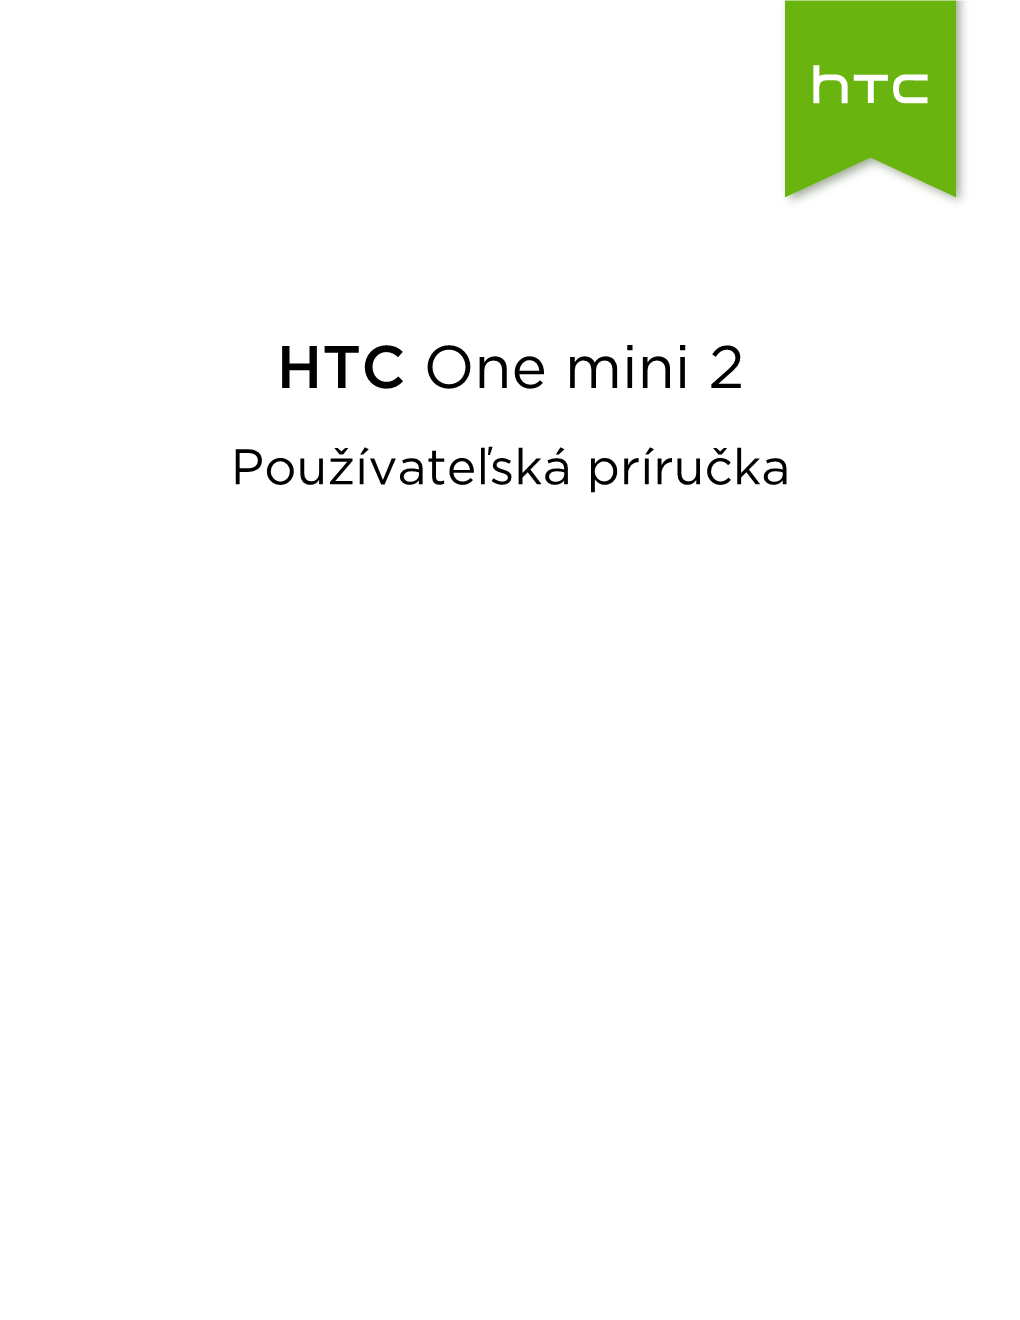 HTC One Mini 2 Používateľská Príručka 2 Obsah Obsah